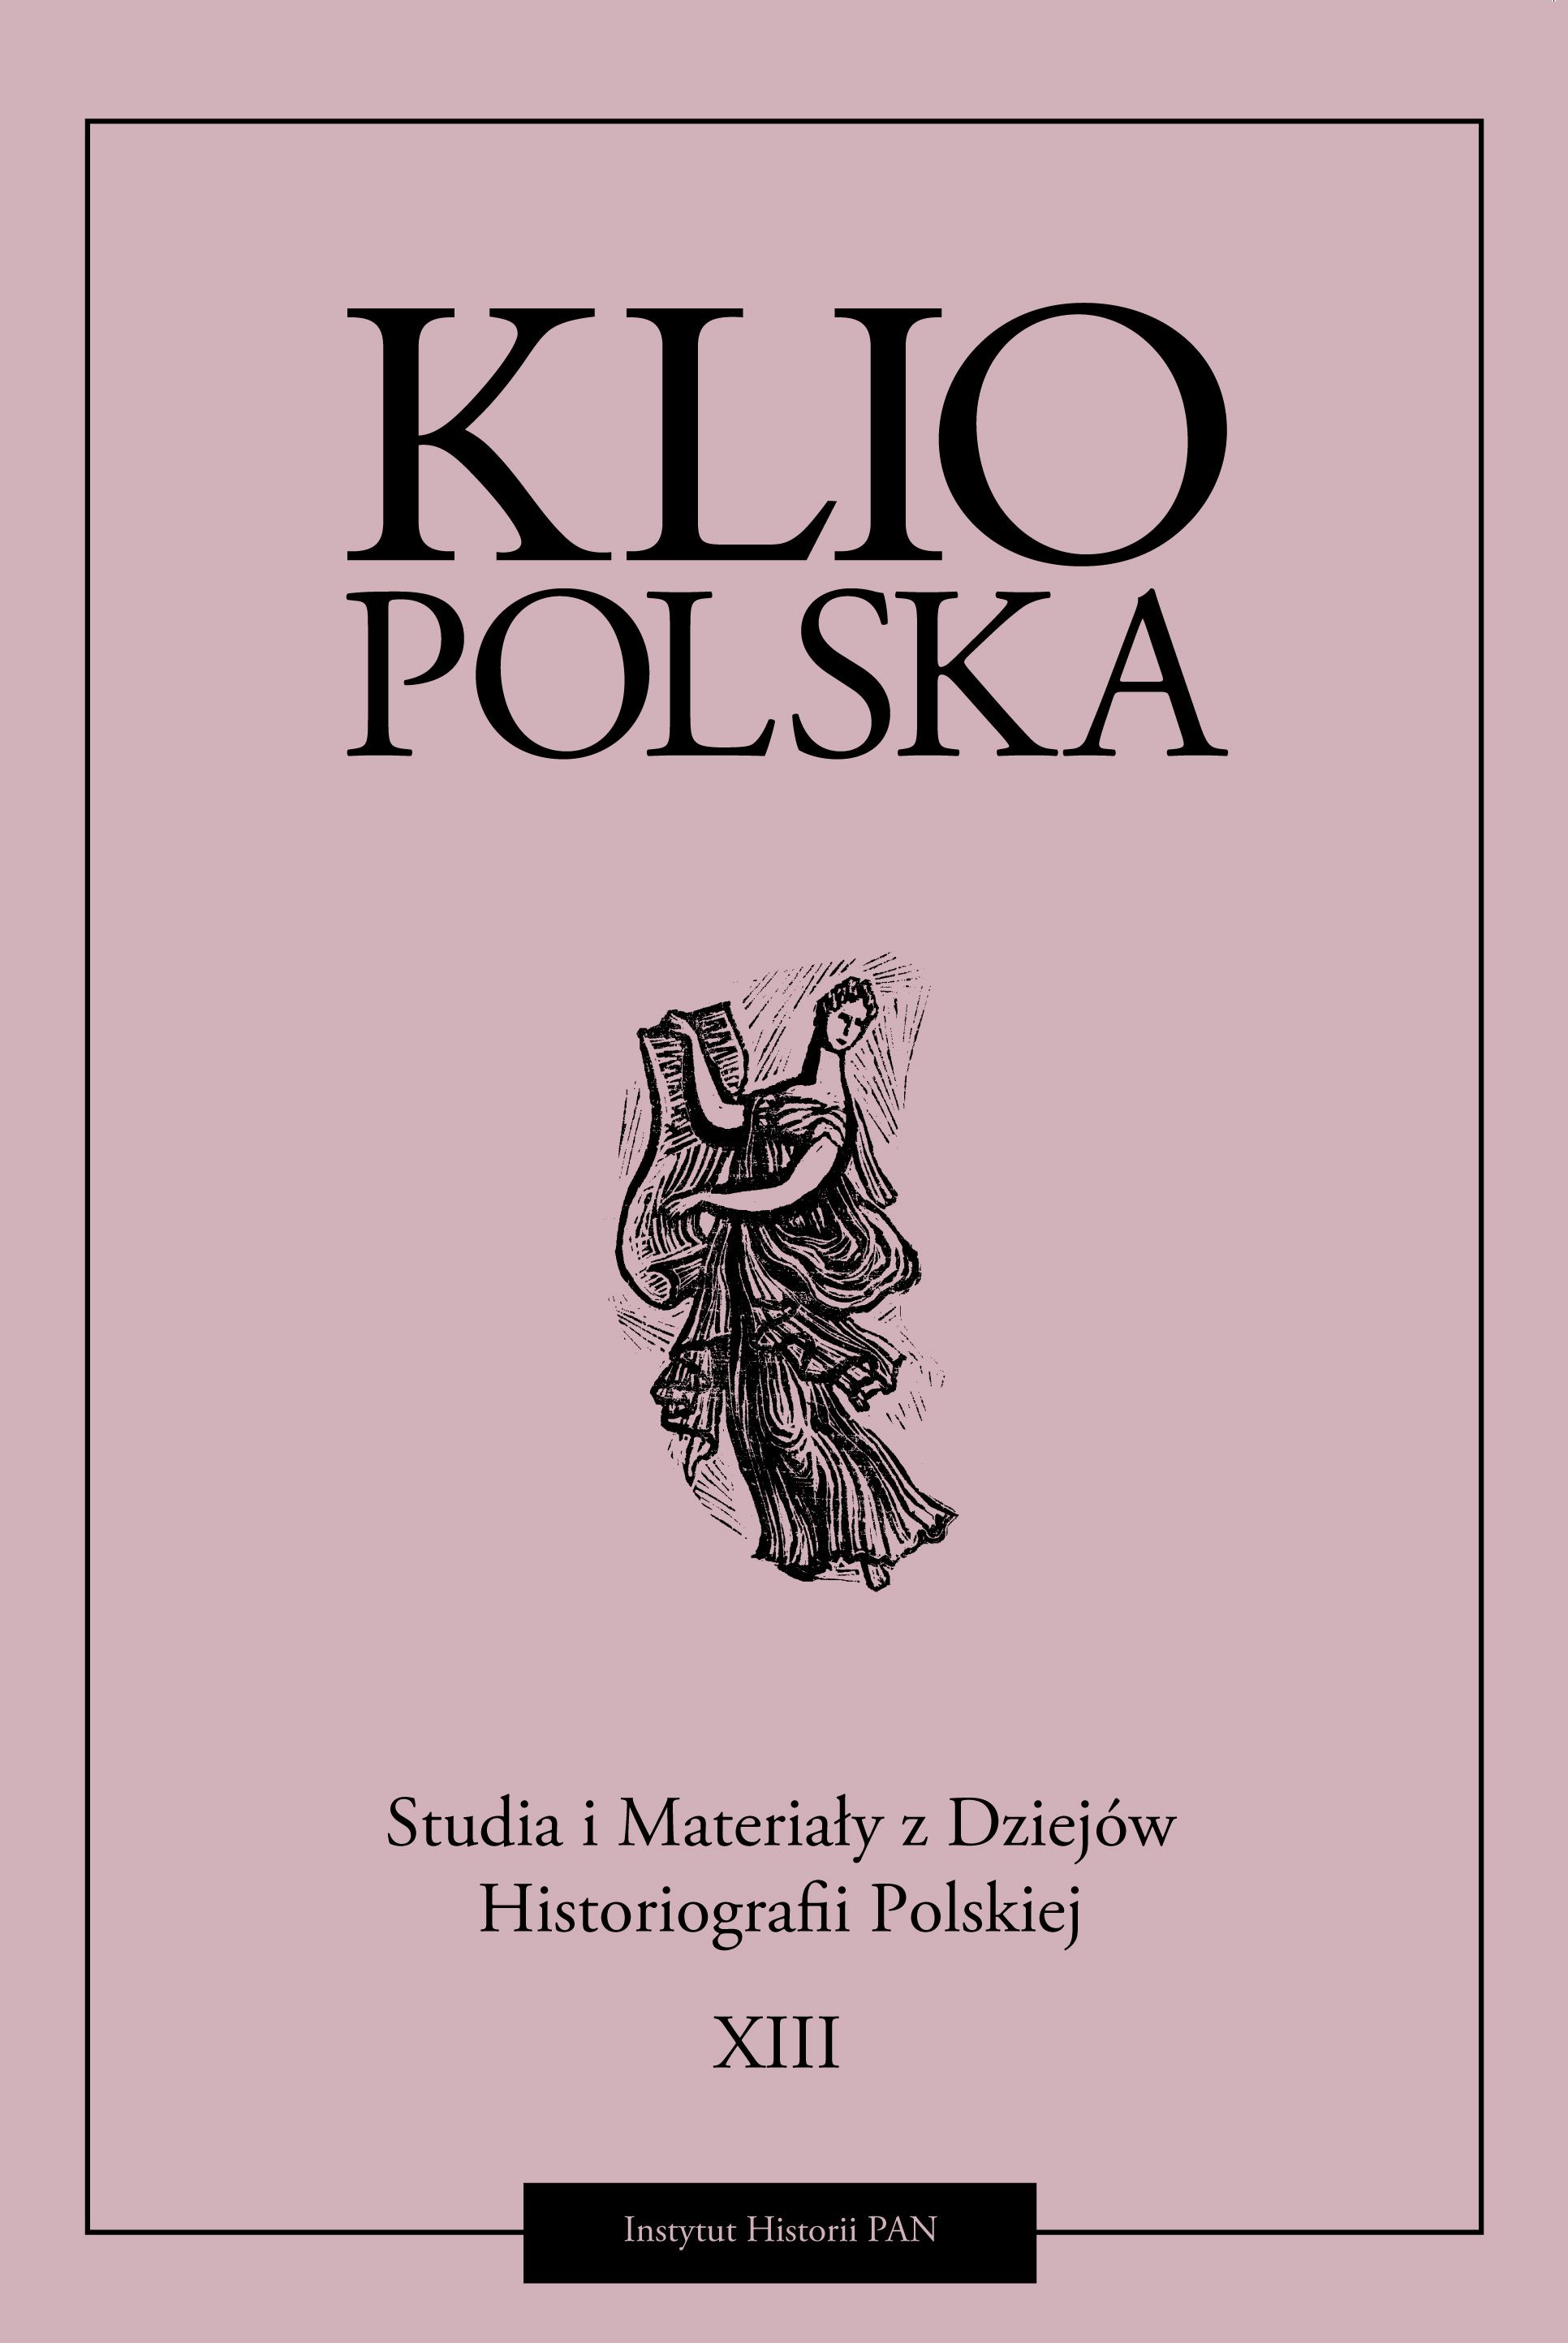 Okładka czasopisma "Klio Polska" Tom XIII